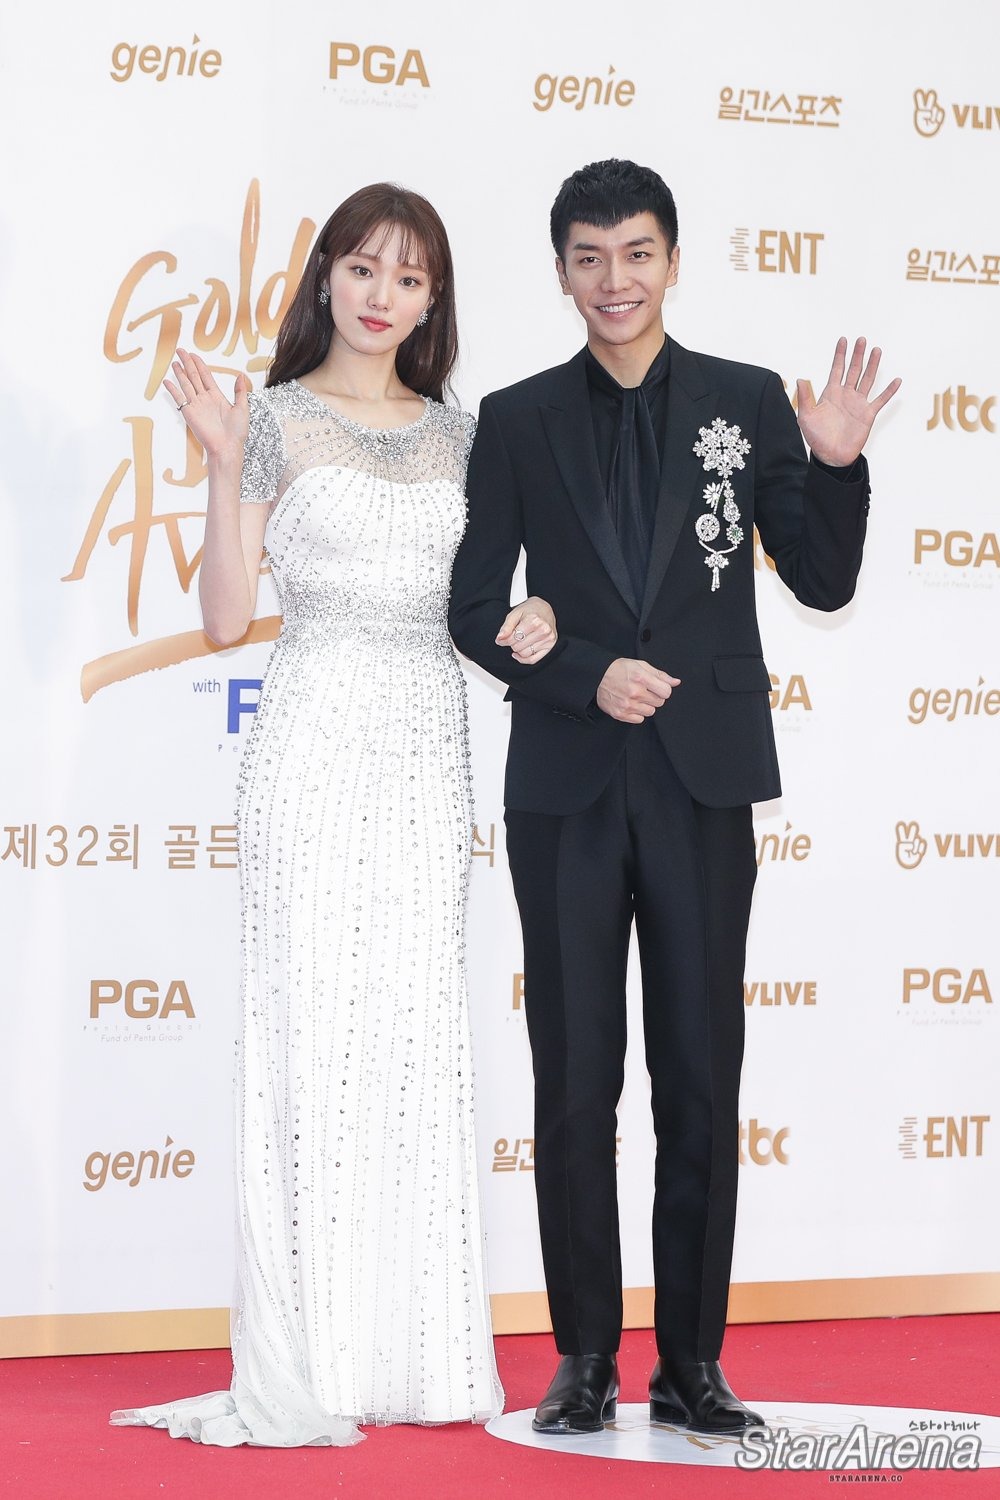 Lee Sung Kyung trên thảm đỏ với trang phục dạ hội màu trắng kết cườm